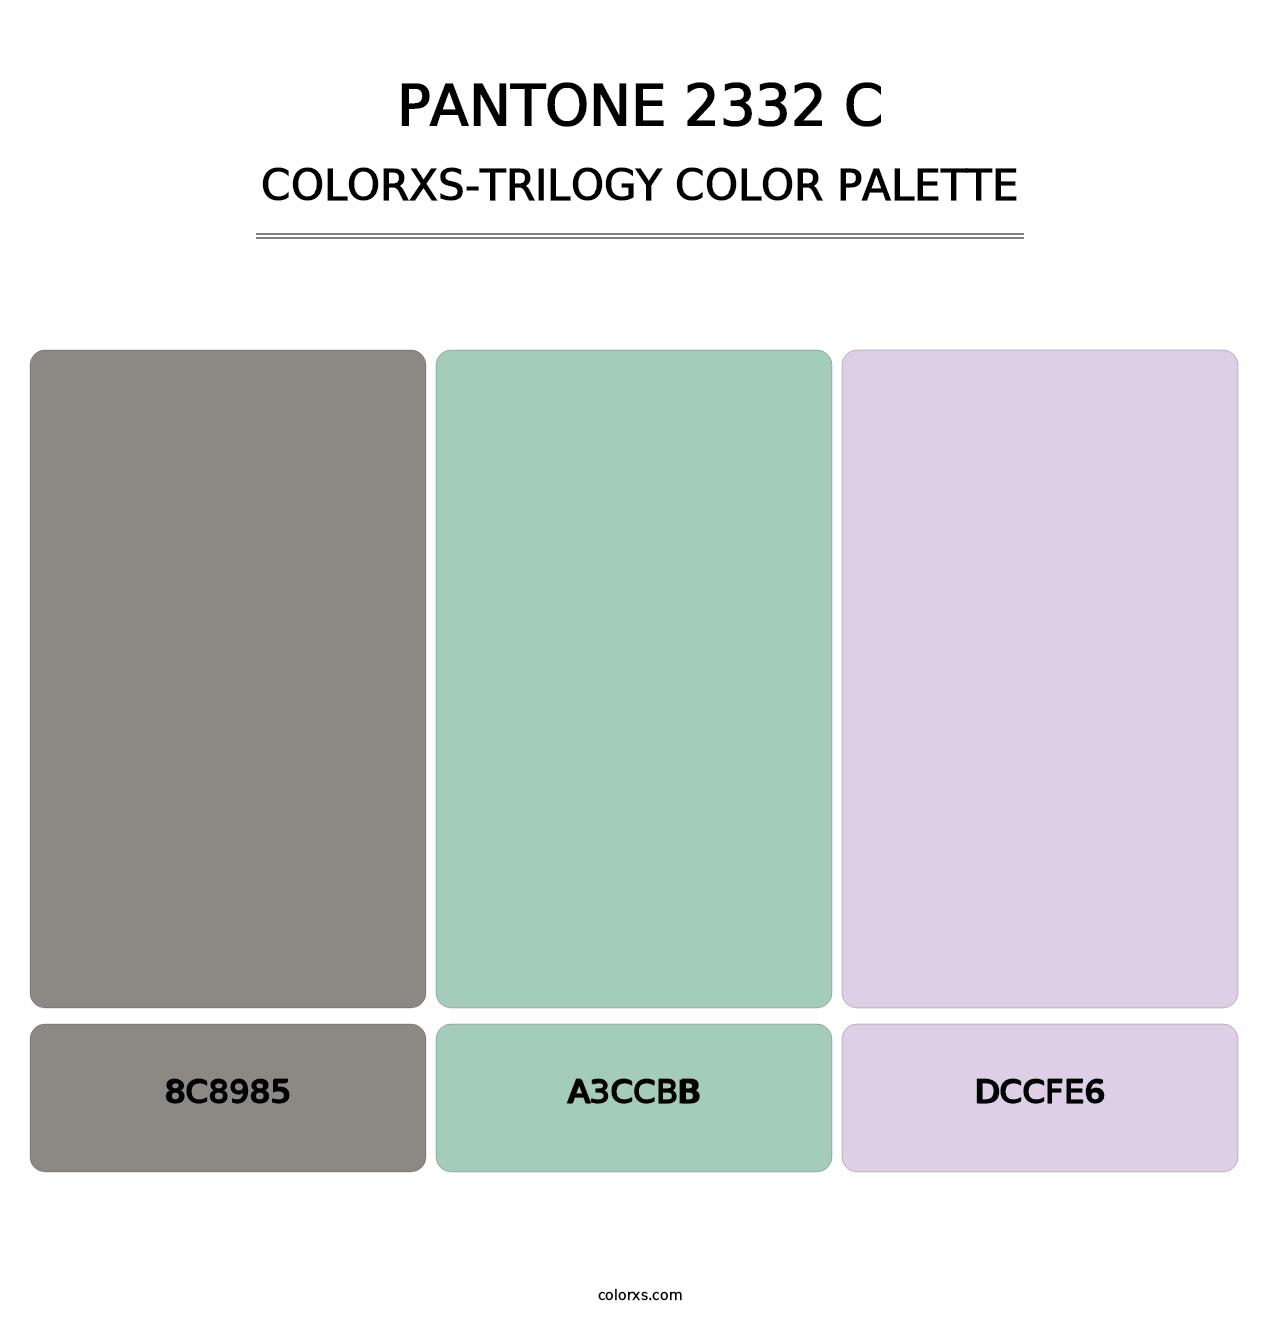 PANTONE 2332 C - Colorxs Trilogy Palette